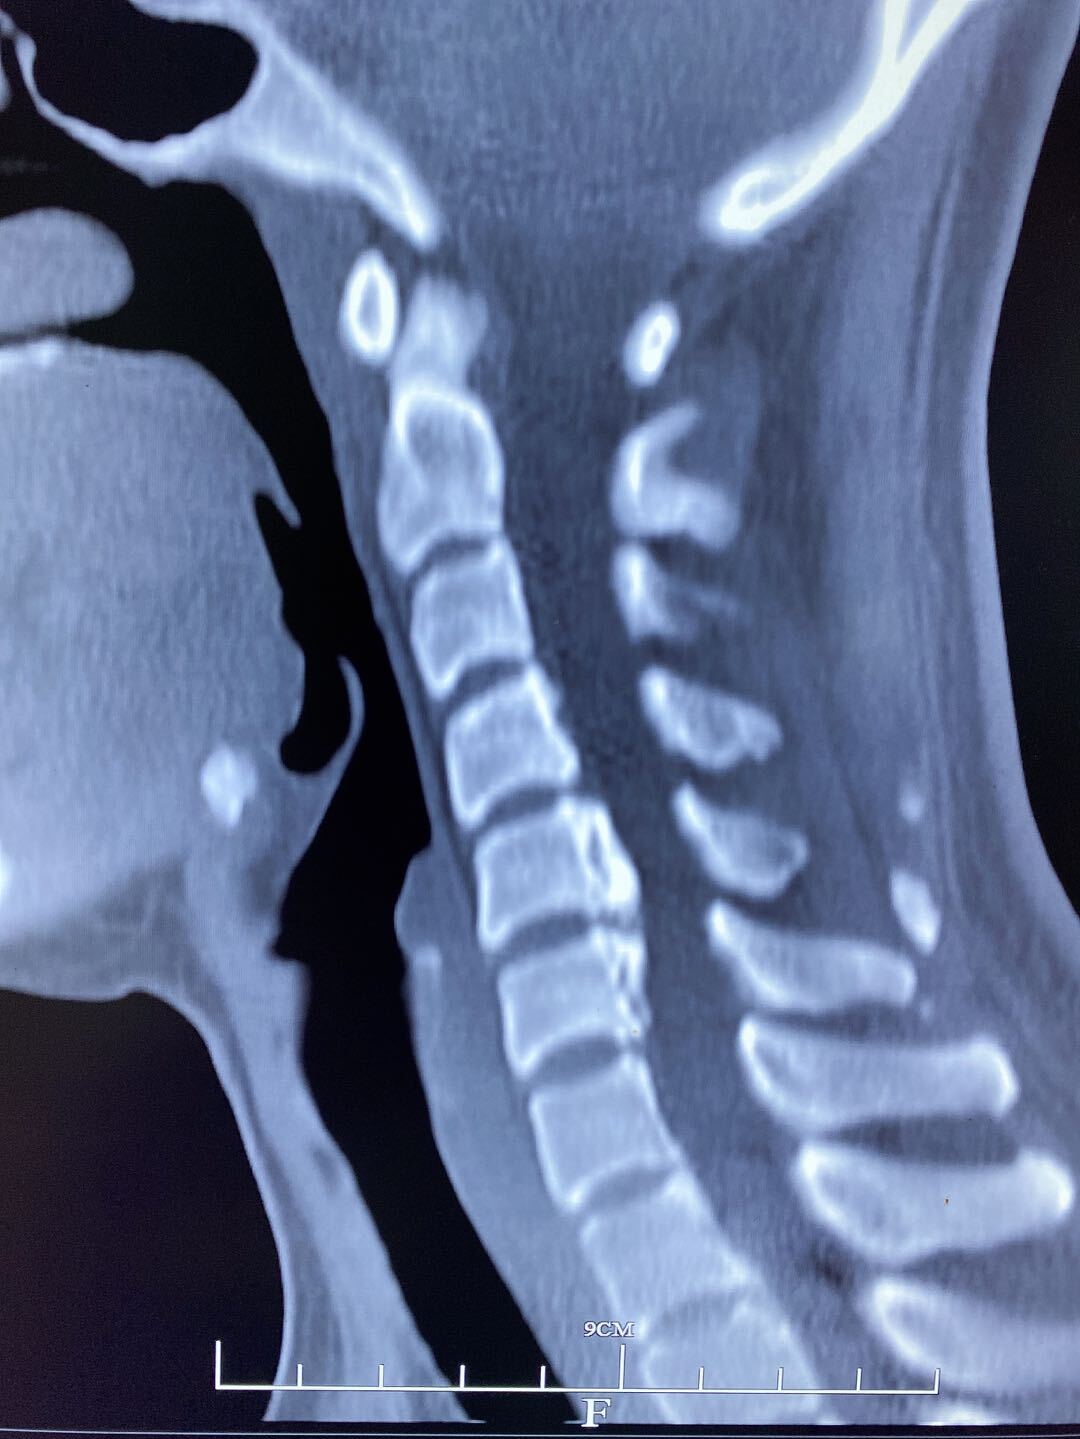 经过颈椎ct及磁共振检查后,诊断出两节段颈椎间盘巨大突出合并有严重